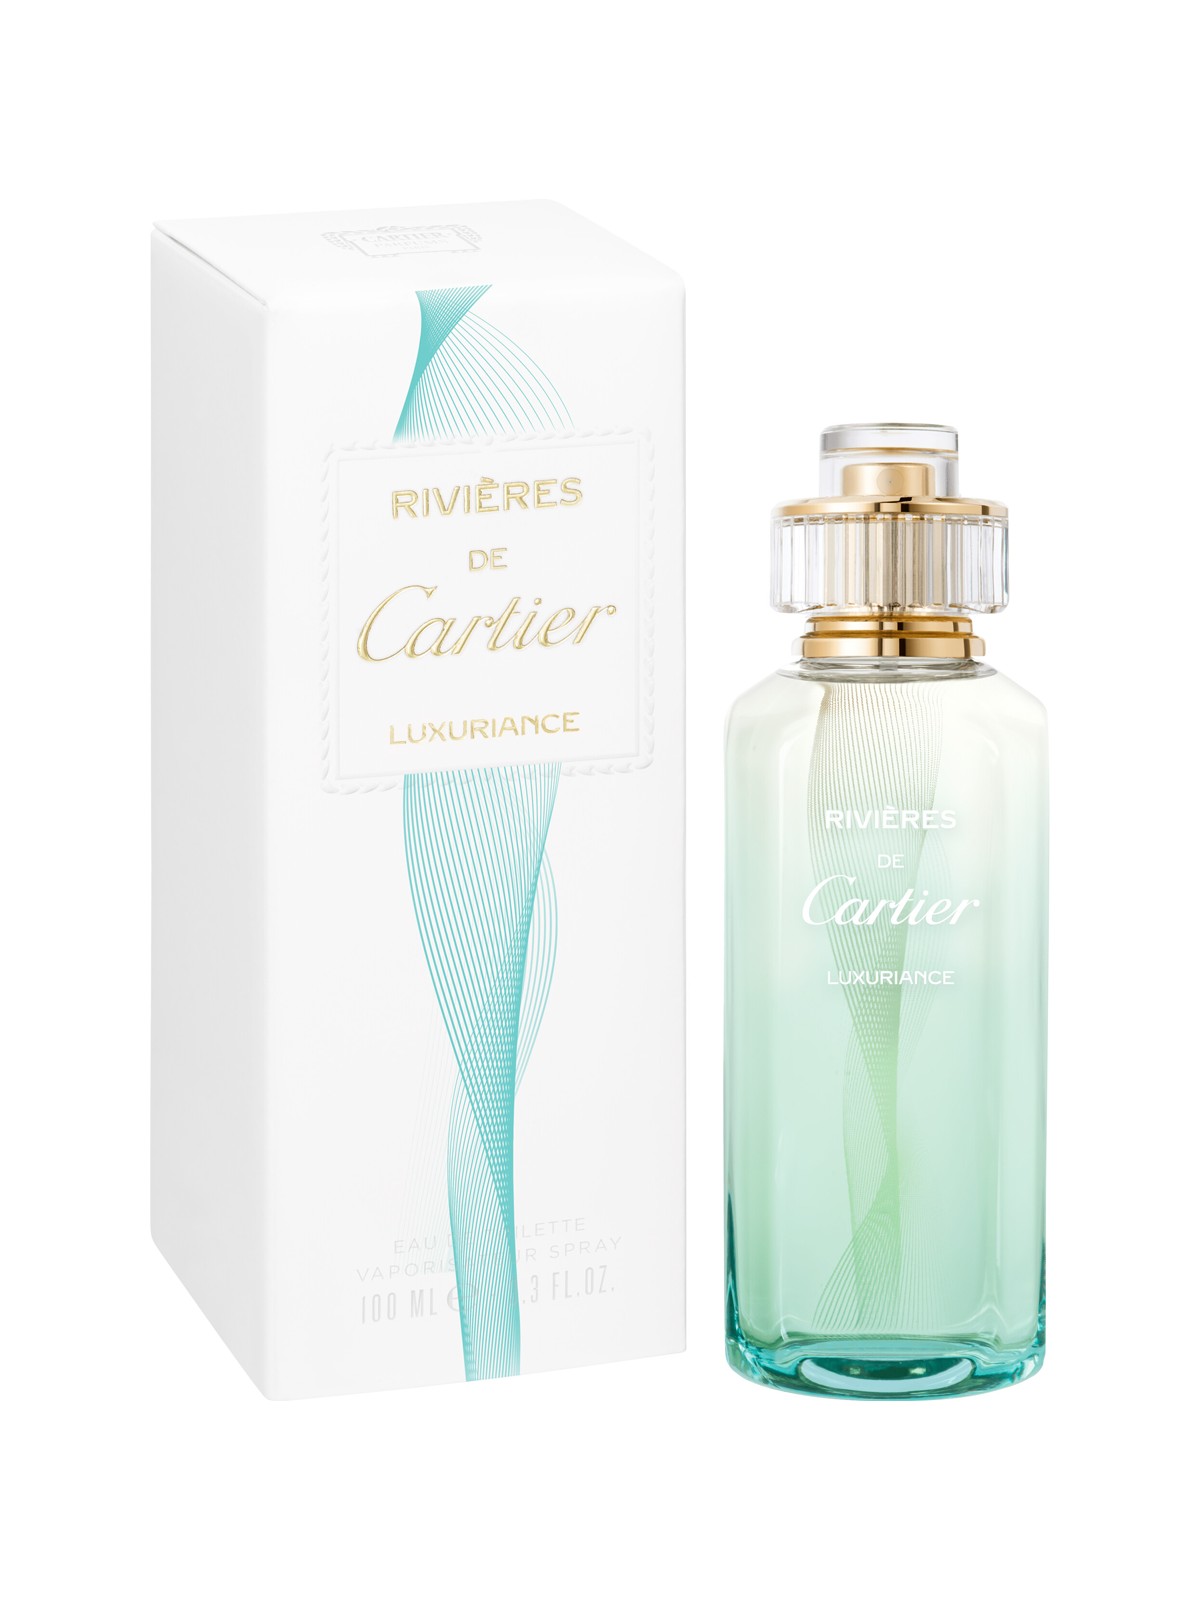 Cartier Rivieres De Cartier Luxuriance - EDT 100 ml